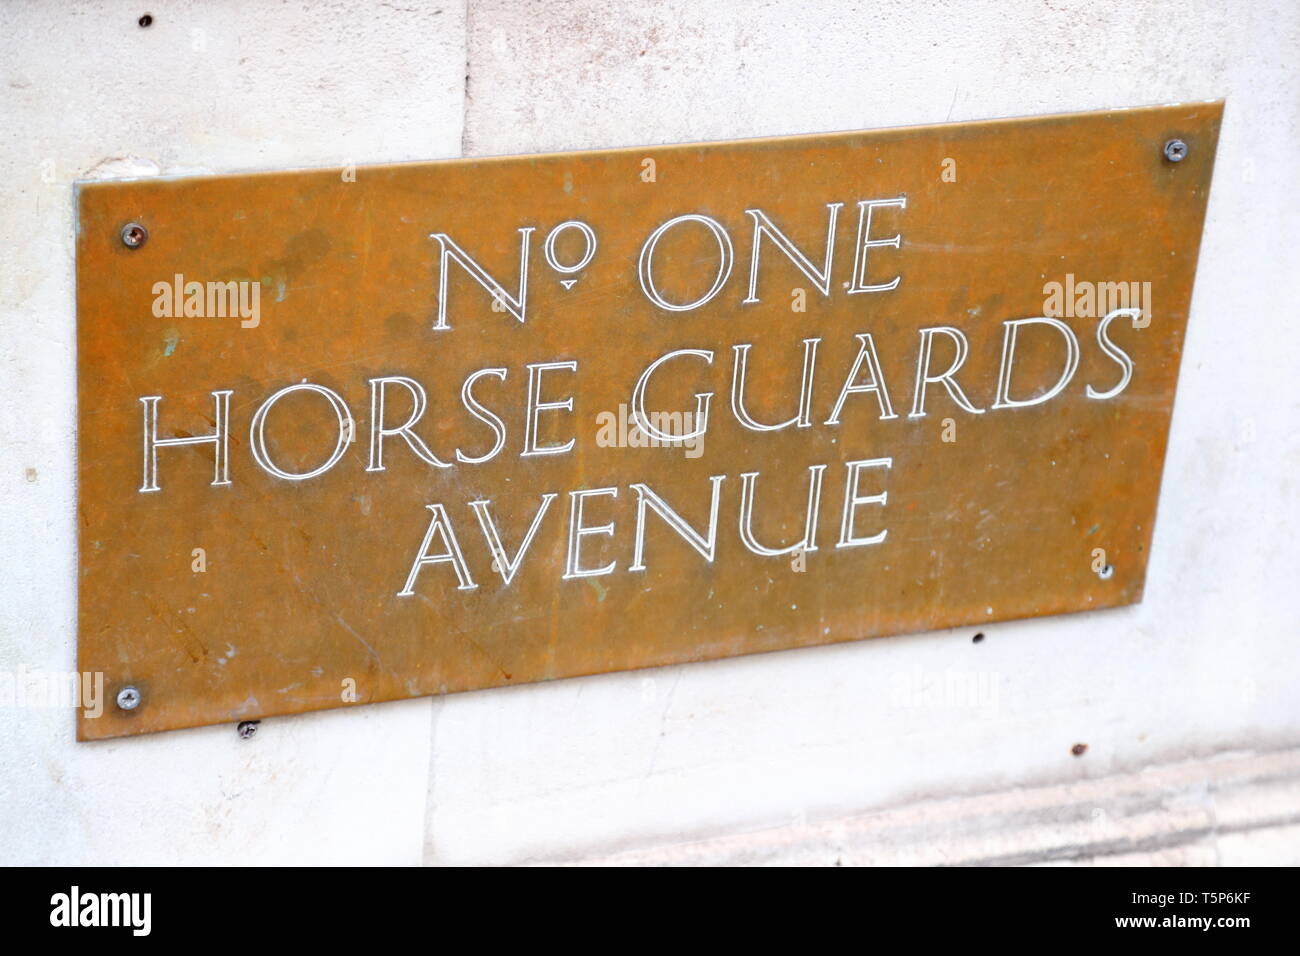 Segno di ottone al numero uno, Horse Guards, Avenue, London, Regno Unito Foto Stock